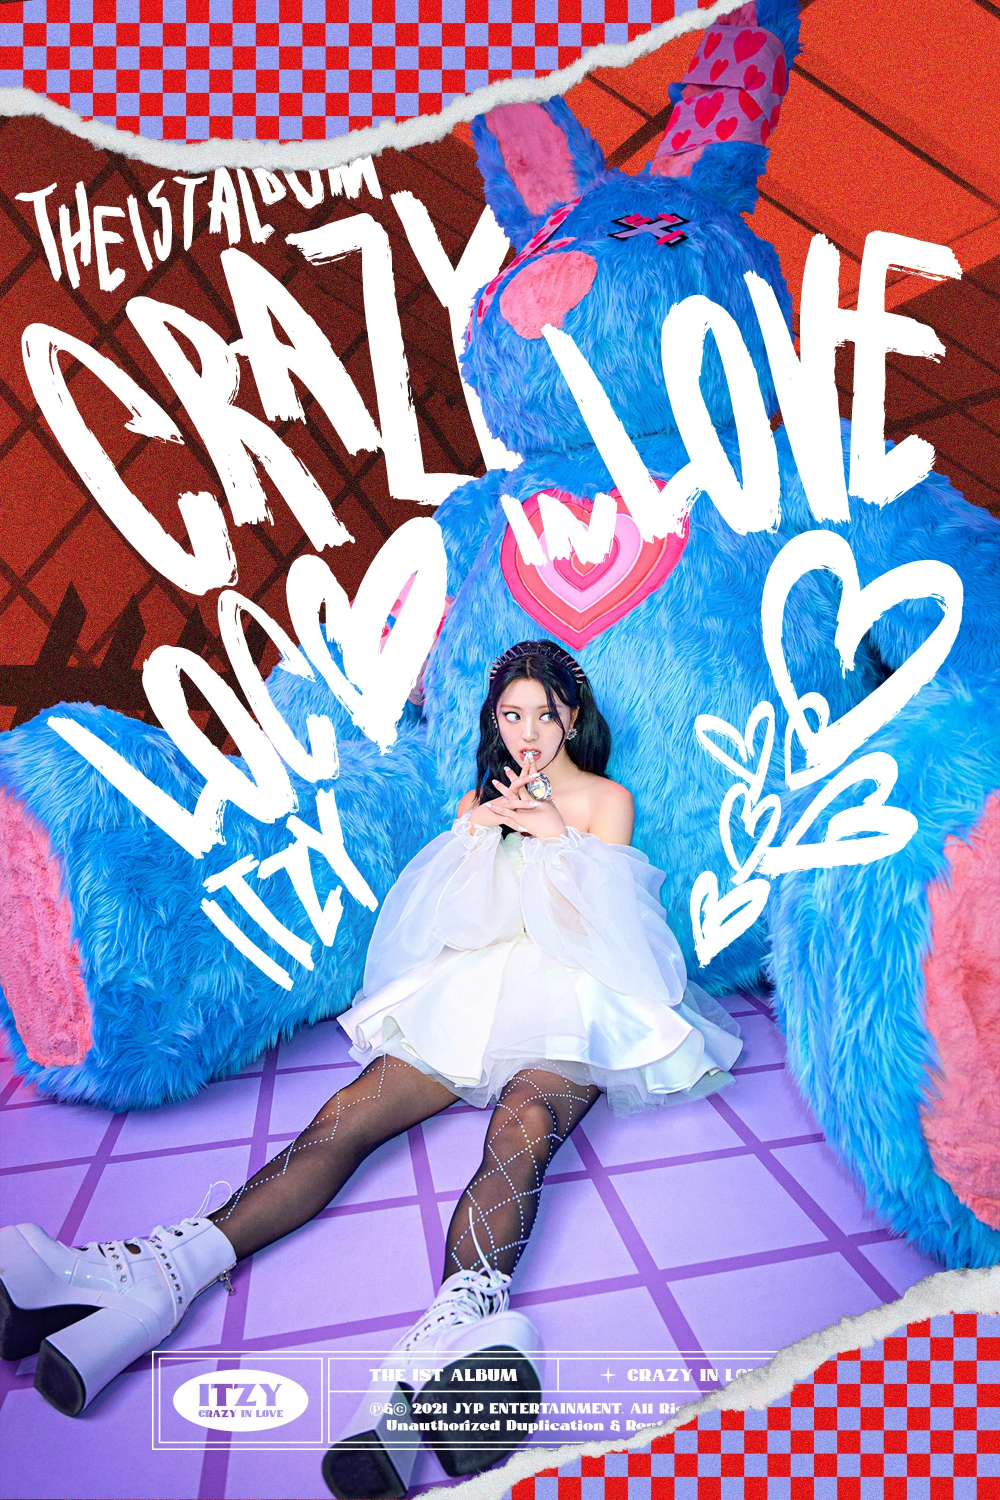 [Камбэк] ITZY альбом "Crazy in Love": музыкальный клип на би-сайд трек "Twenty"